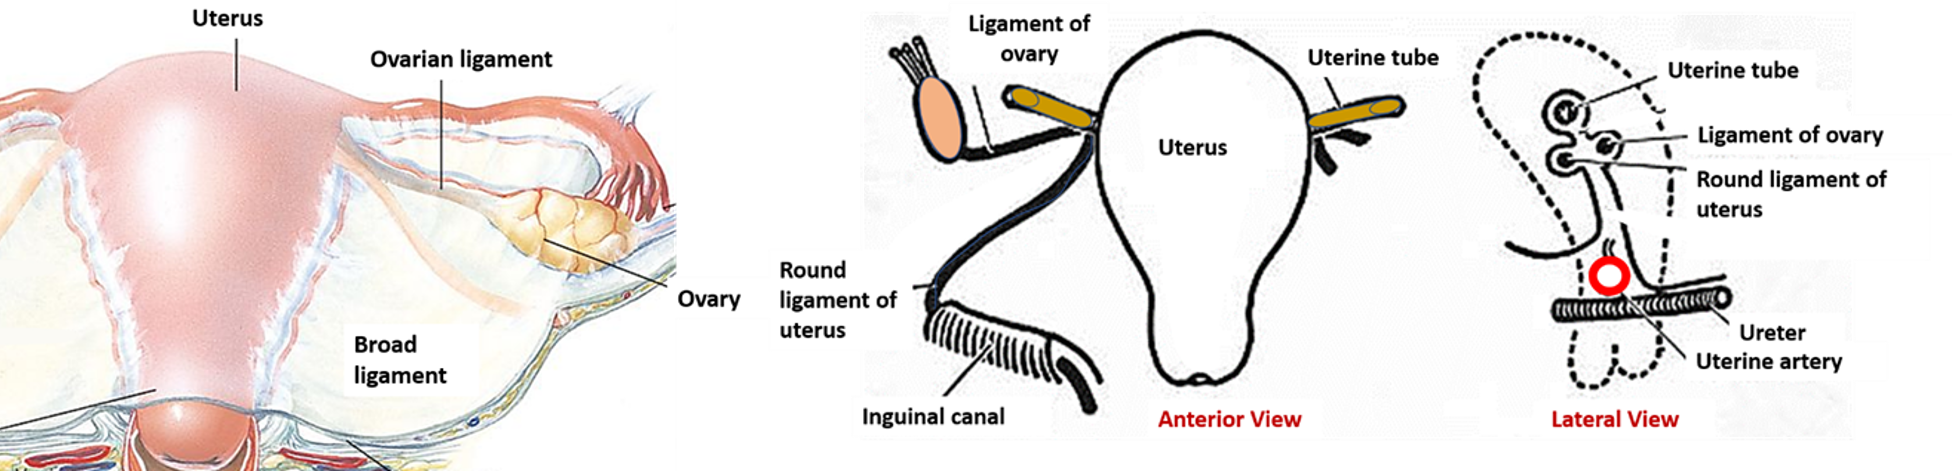 uterus - ligaments